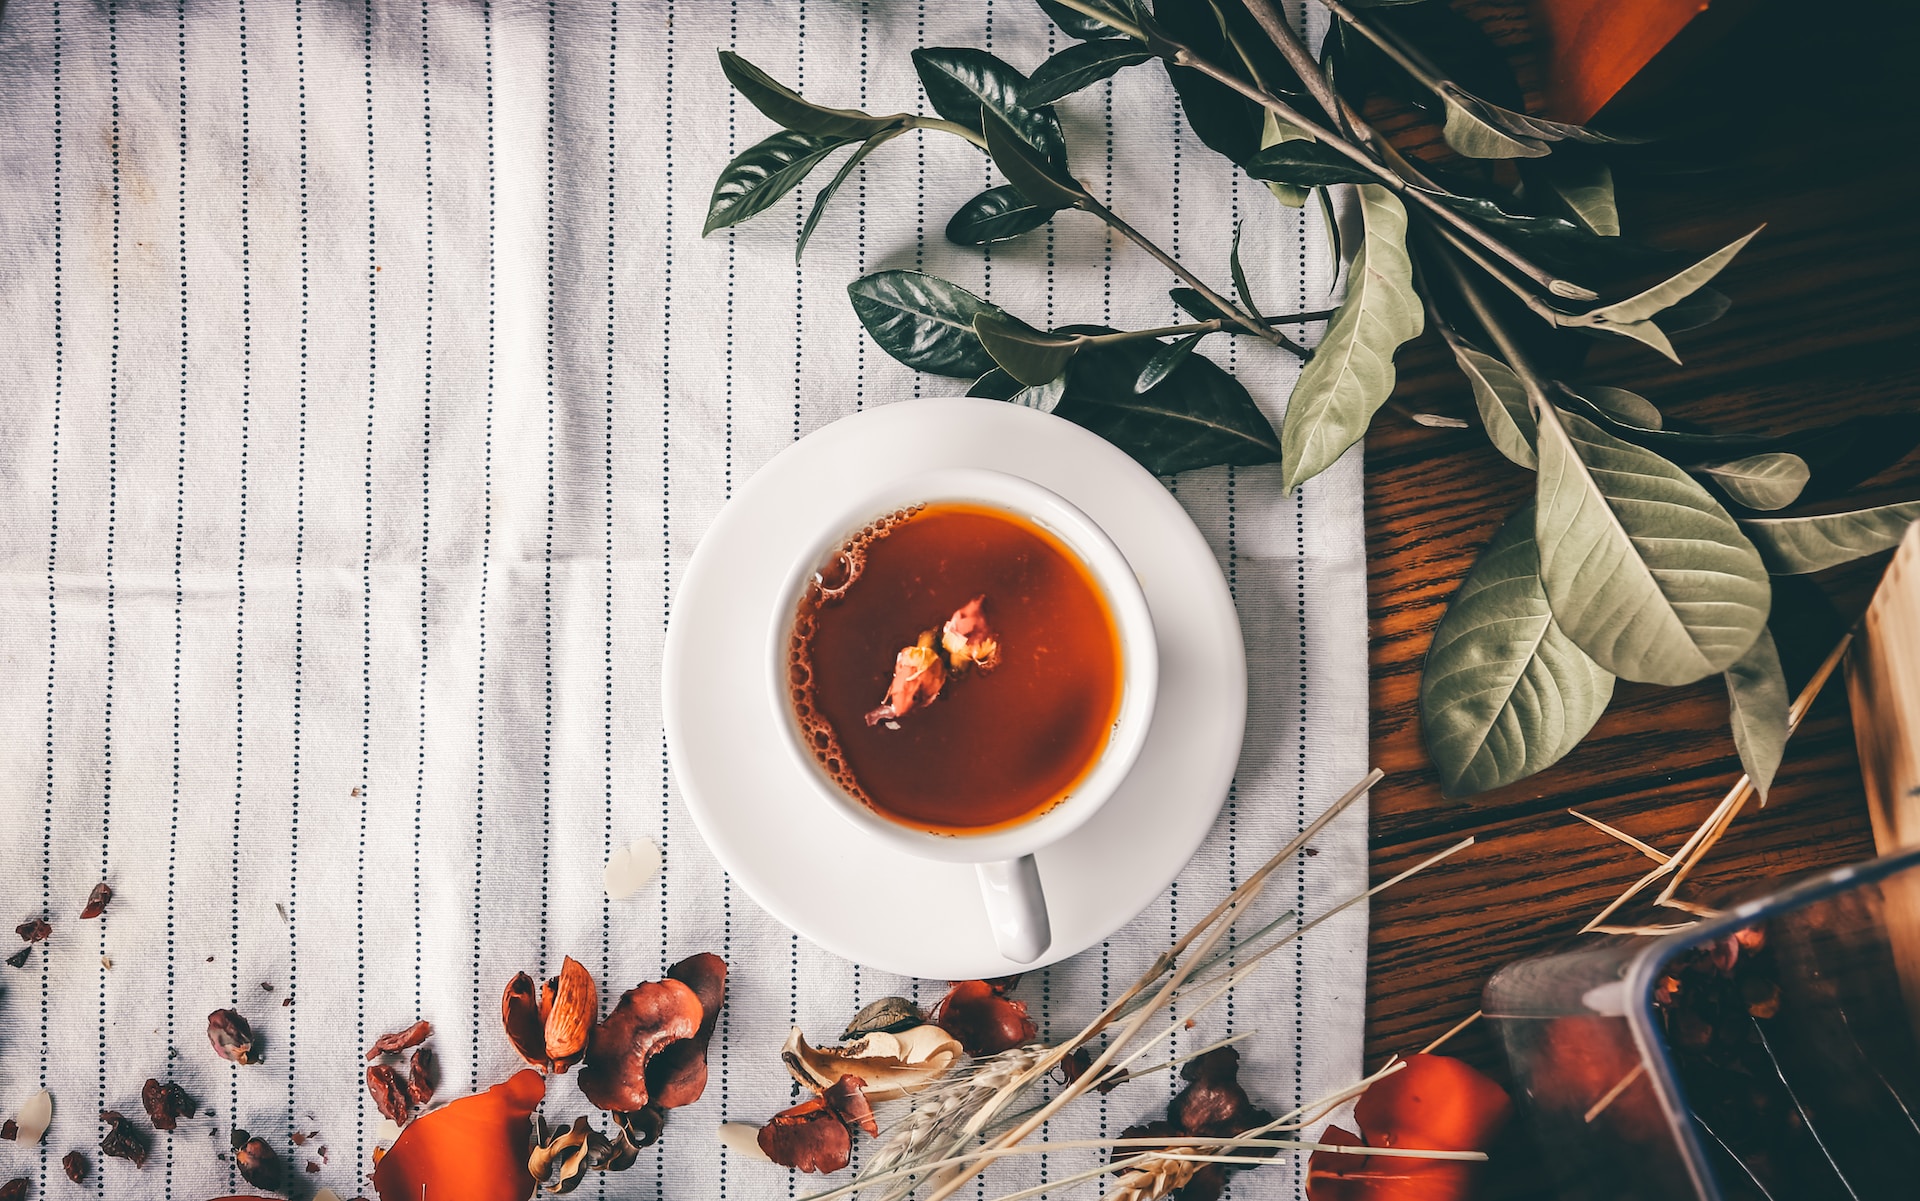 How to Make Moringa Tea